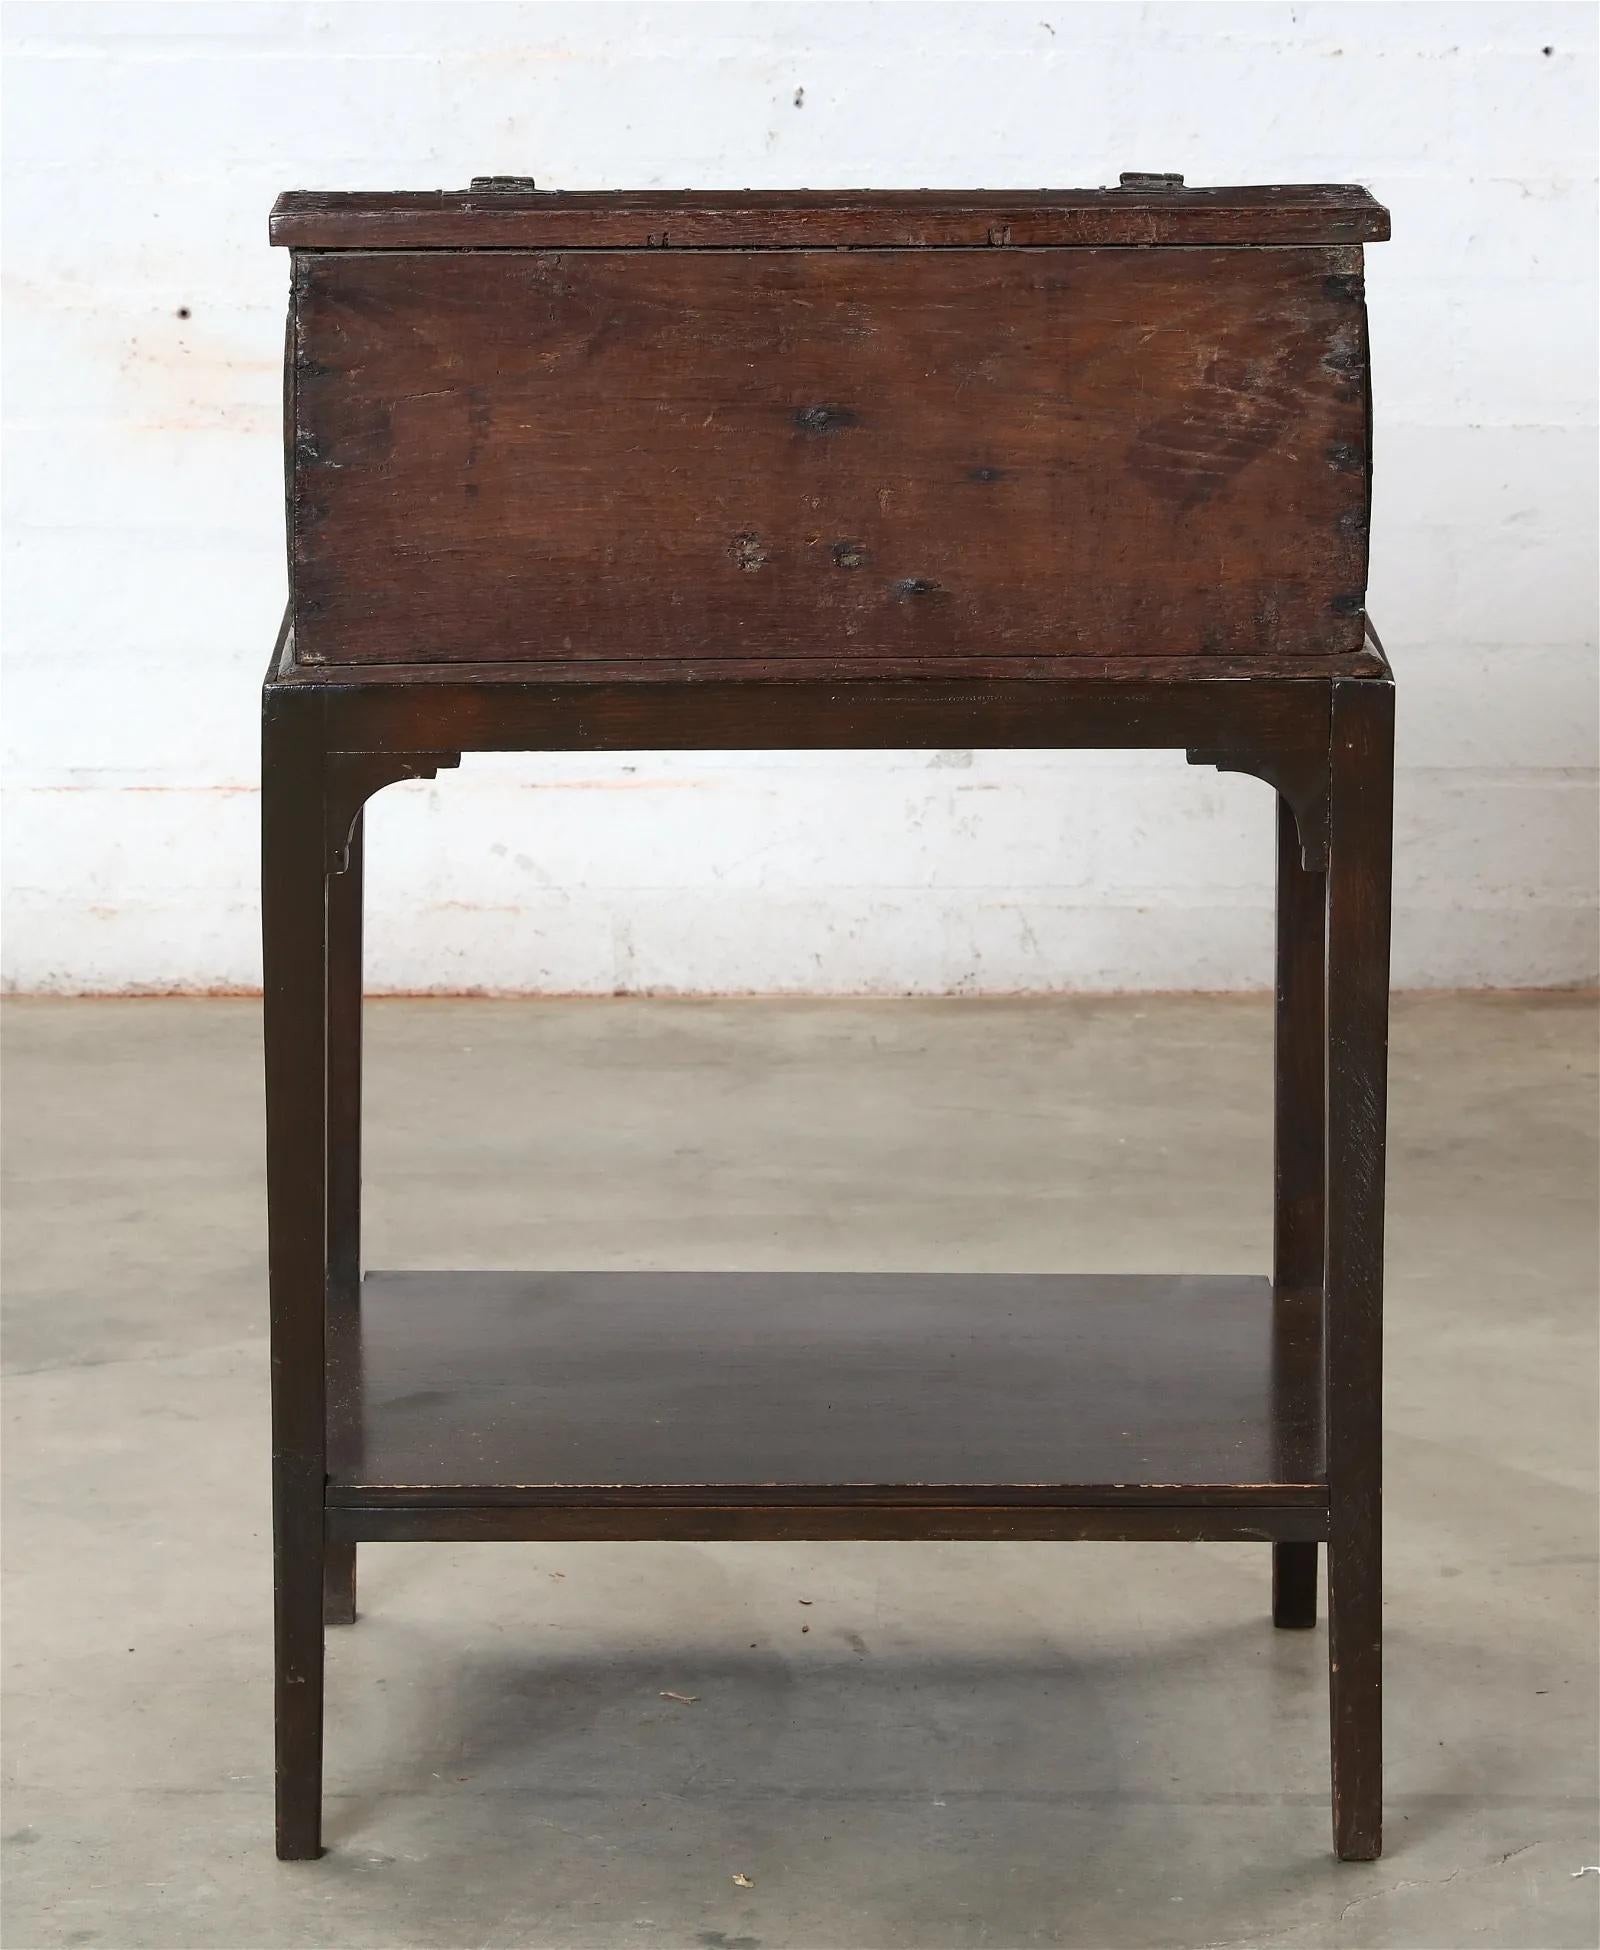 Frühes 17. Jahrhundert Hand Crafted English Jacobean Slant Front Desk on Later Stand auch in Eiche gefertigt. Aufwändige handgeschnitzte Details auf der Vorderseite und den Seitenwänden. Innen mit 3 eingelegten Eichenschubladen mit handgeschnitzten